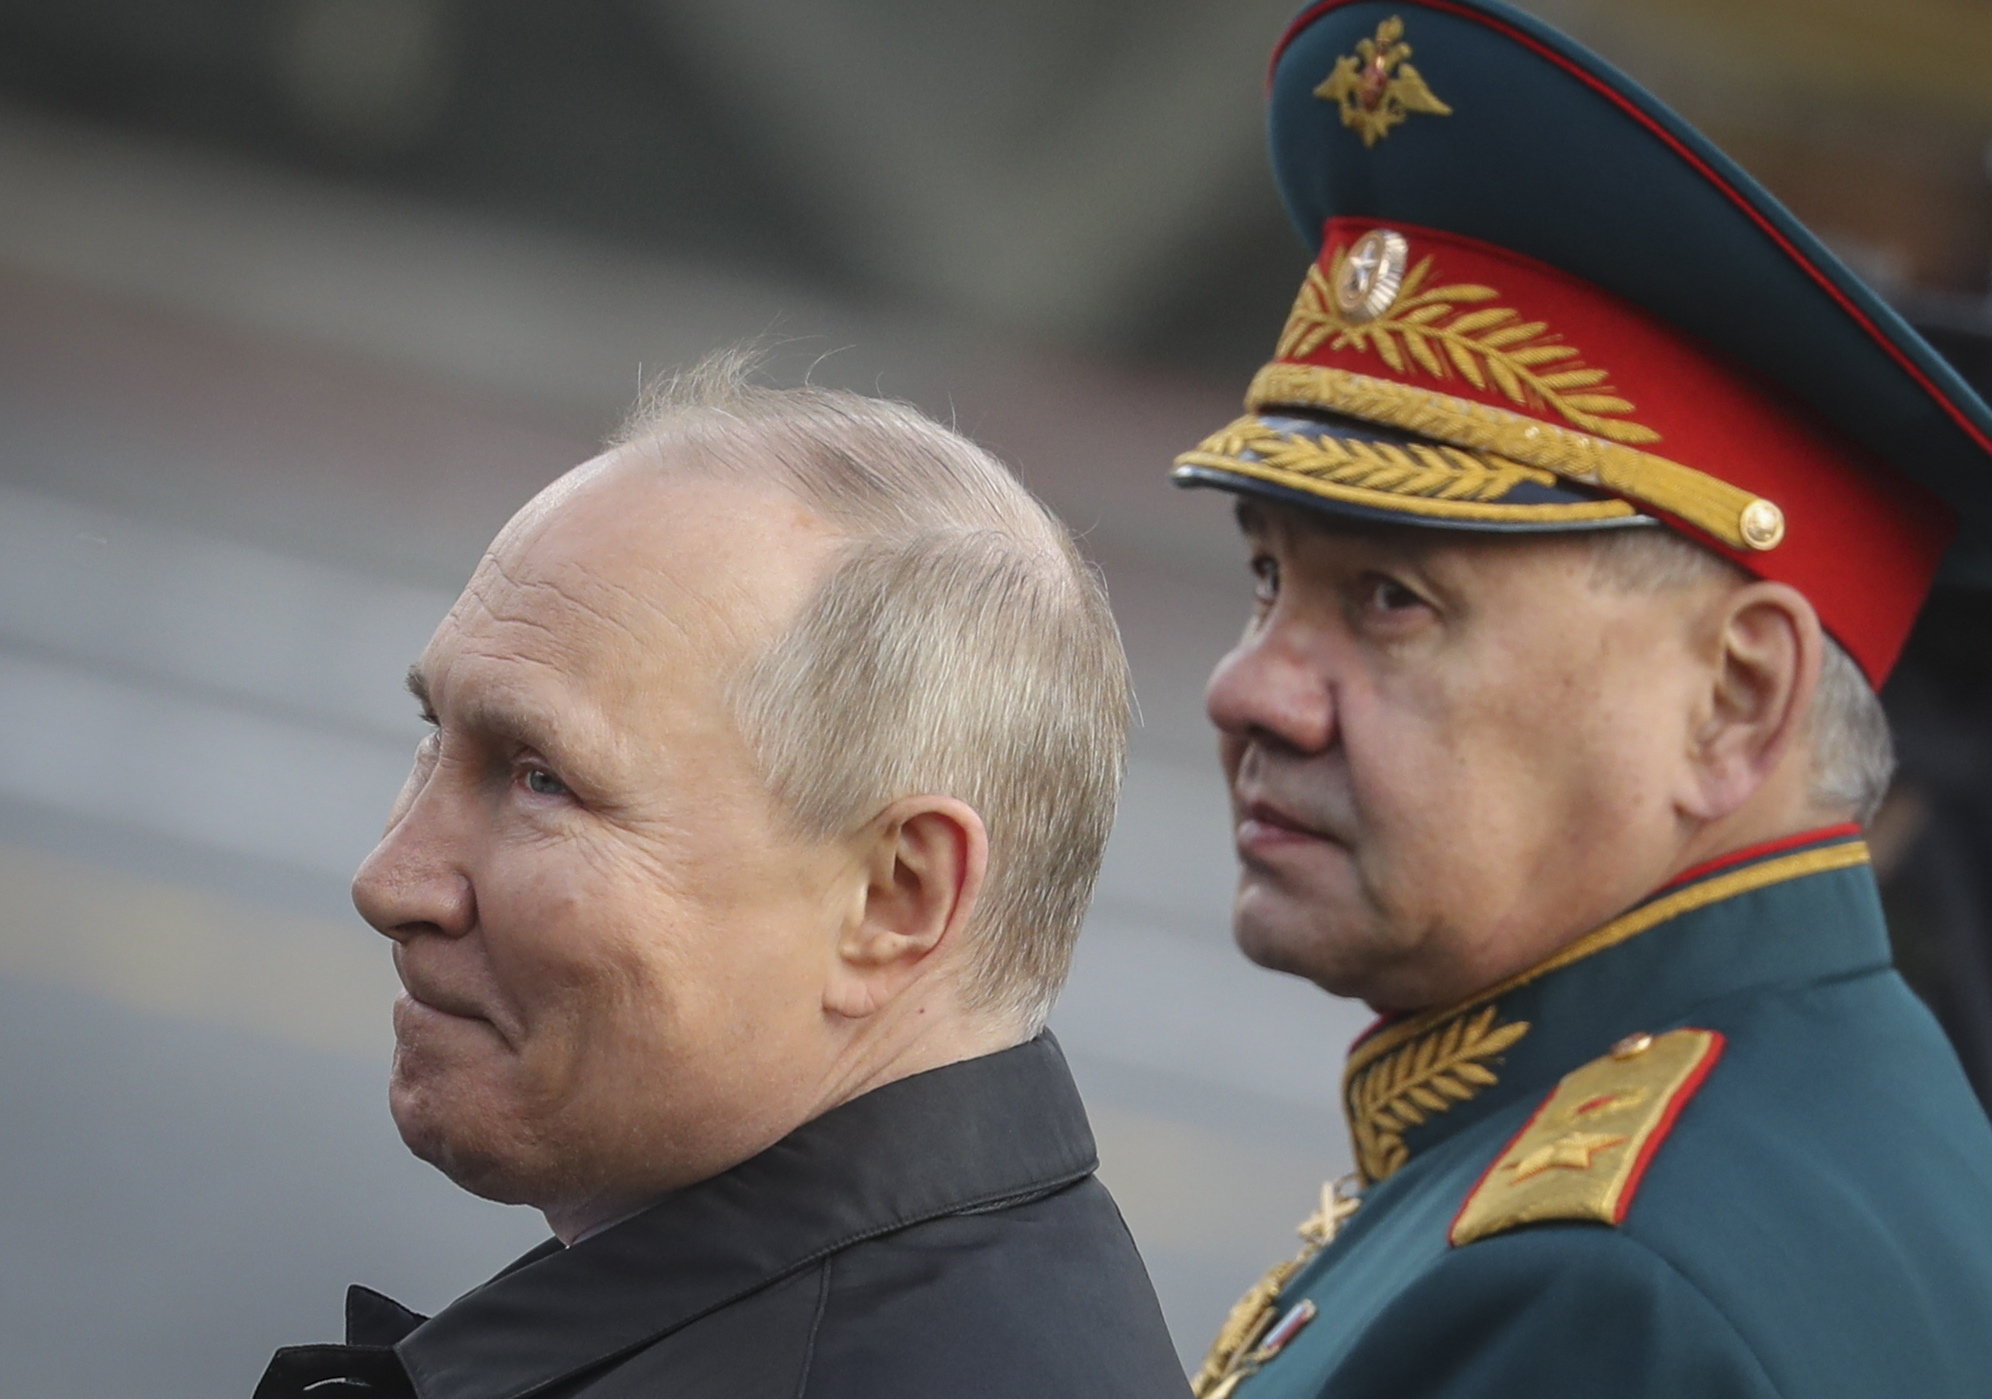 Oroszország fenyegetve érzi magát, katonai egységeket hoz létre a Baltikumban